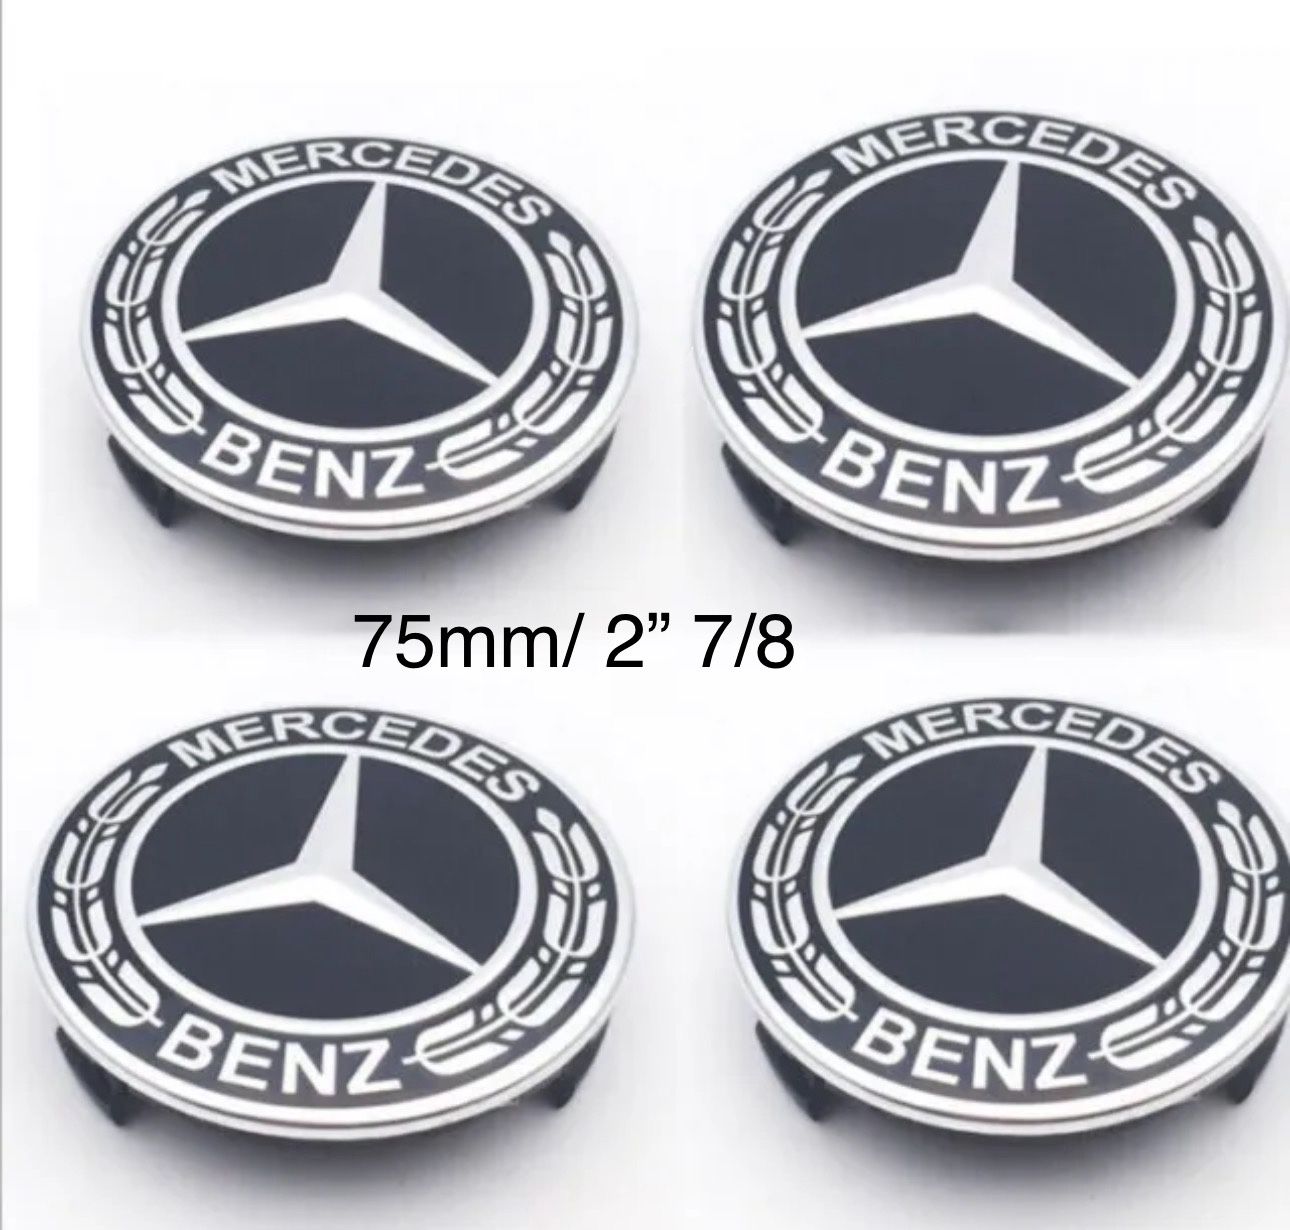 4PCS For Mercedes Benz Wheel Center Caps Emblem Black 75mm Rim Hub Cover Logo 